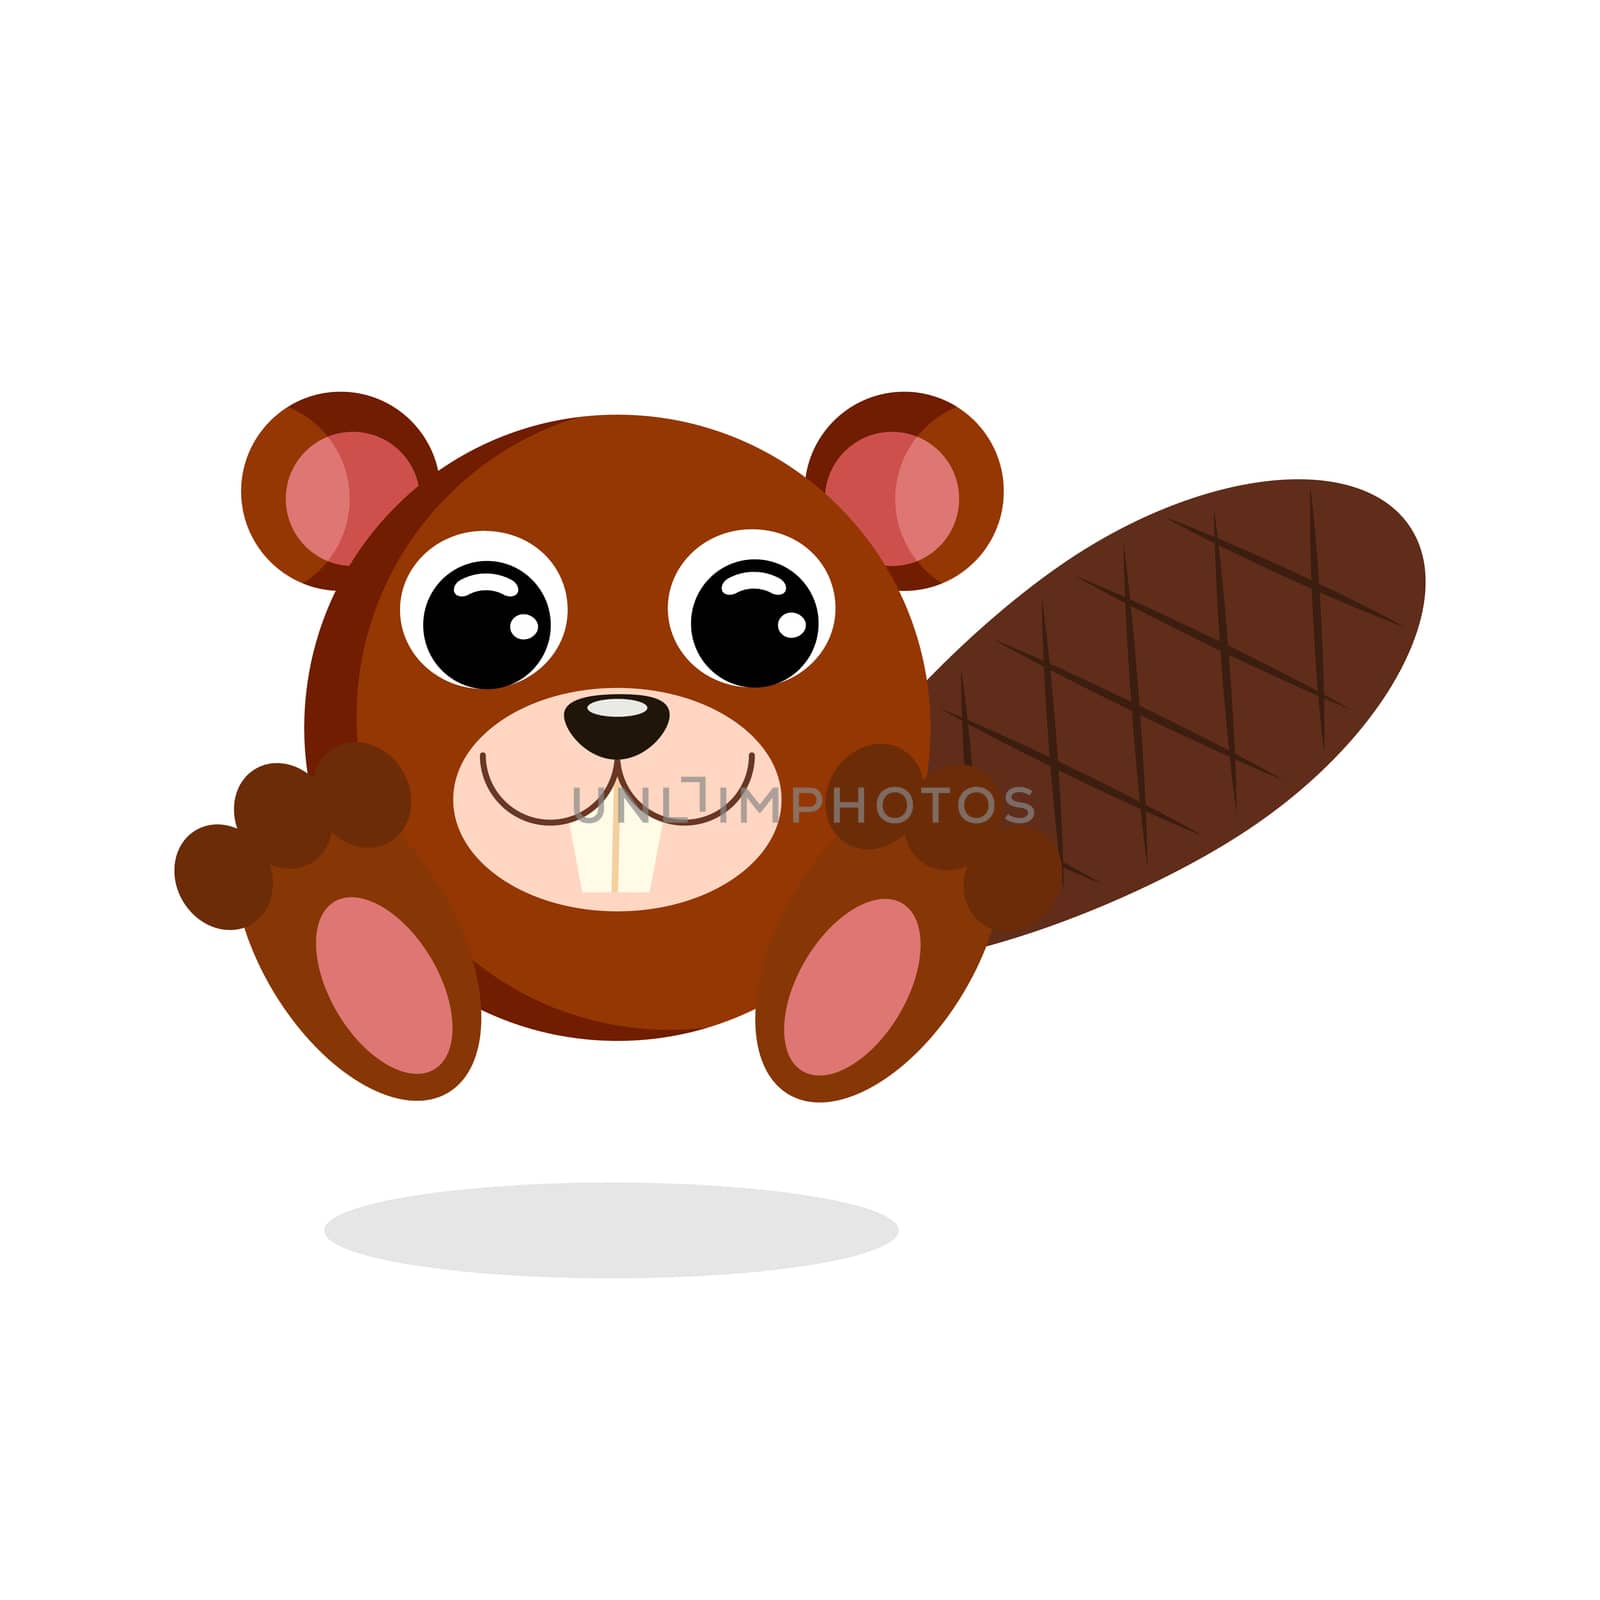 beaver vector illustration. Flat design by Melnyk